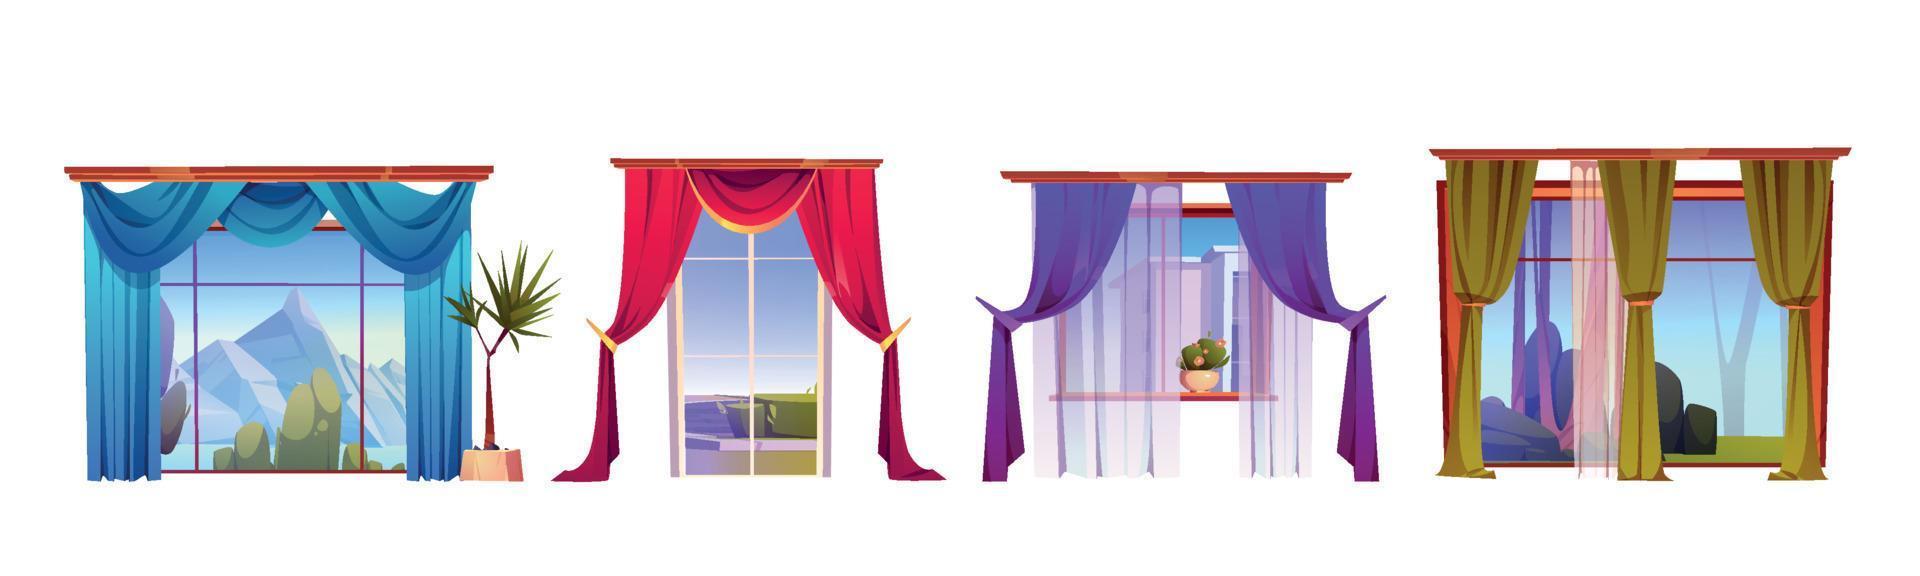 ventanas con cortinas y vista exterior, decoración vector